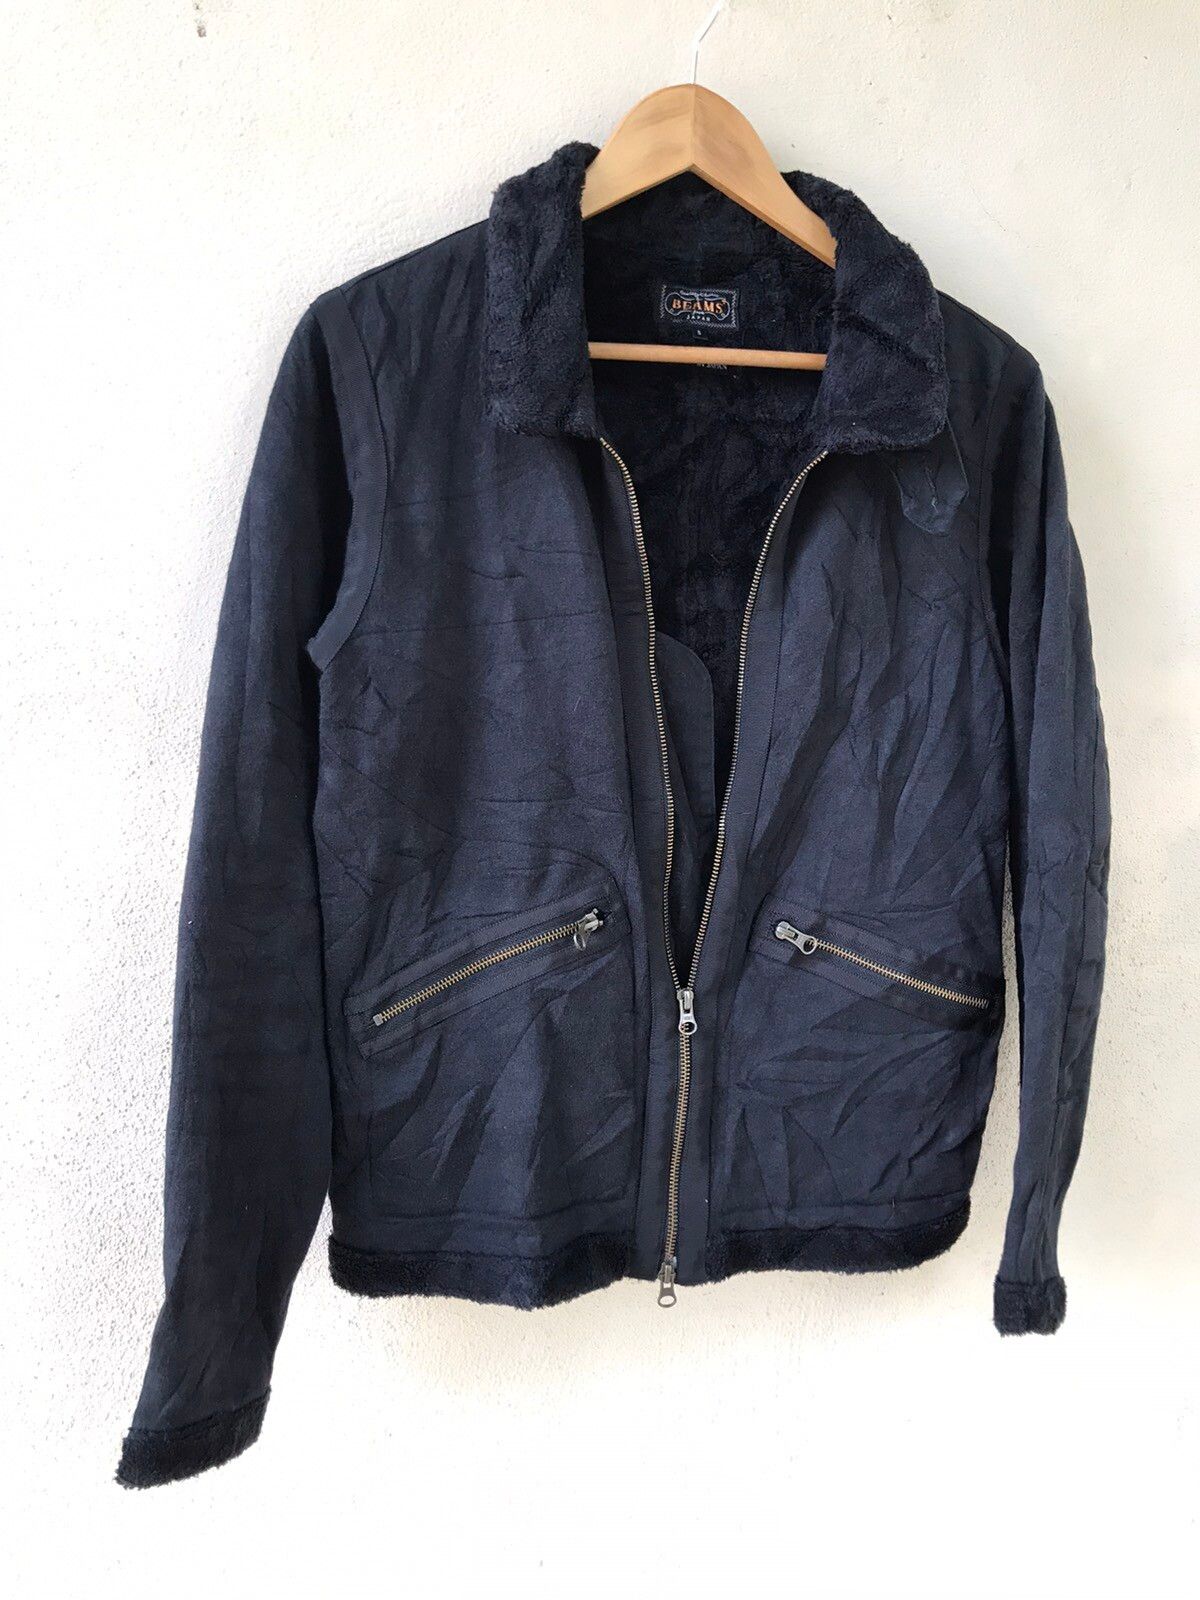 Made In Japan Beams Black jacket - 1